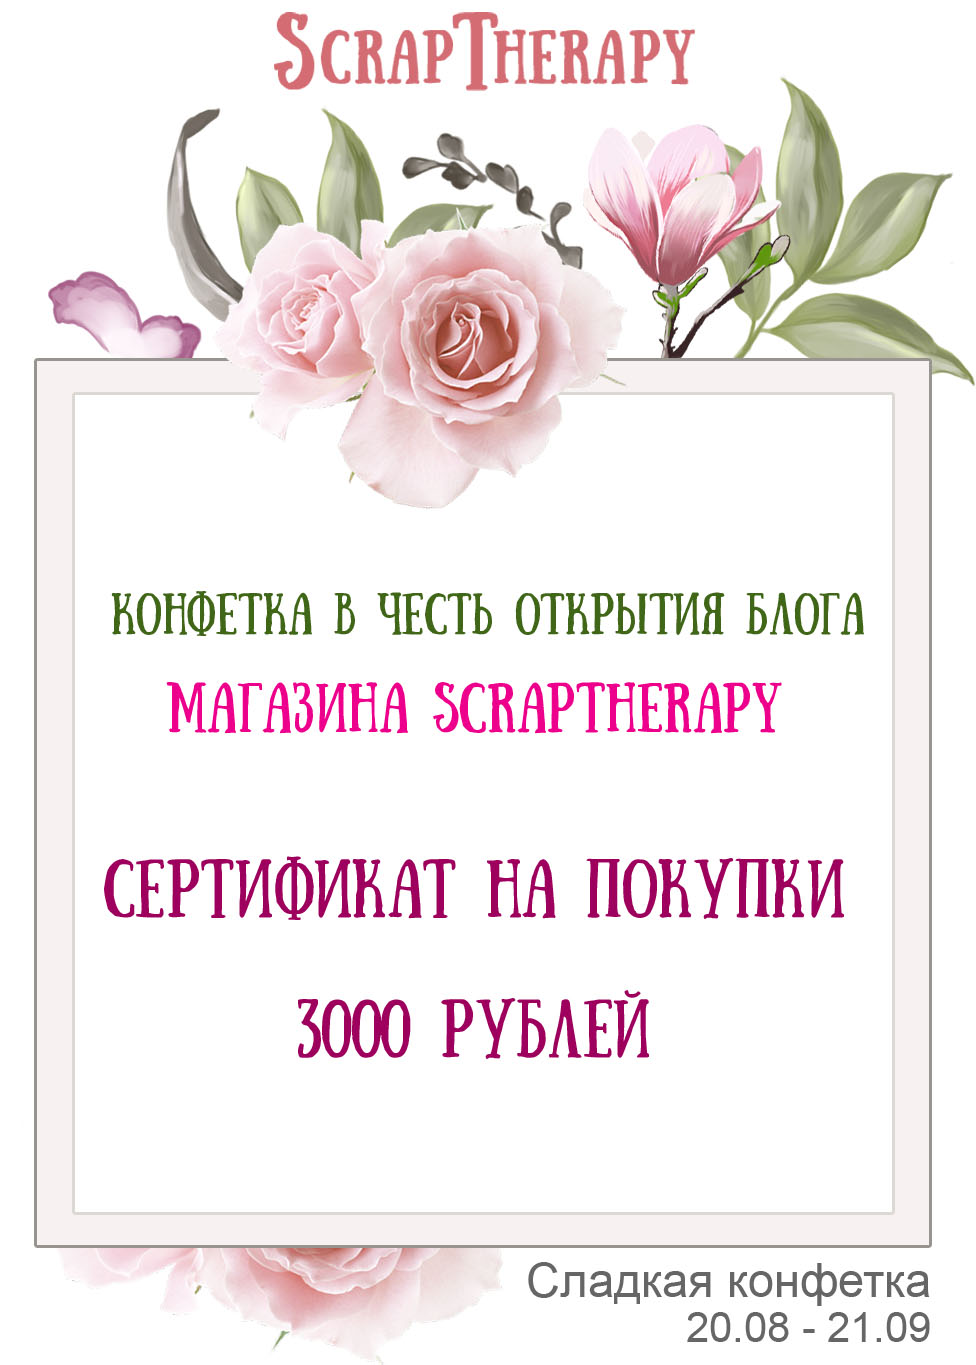 у магазина Scraptherapy теперь есть свой блог :)